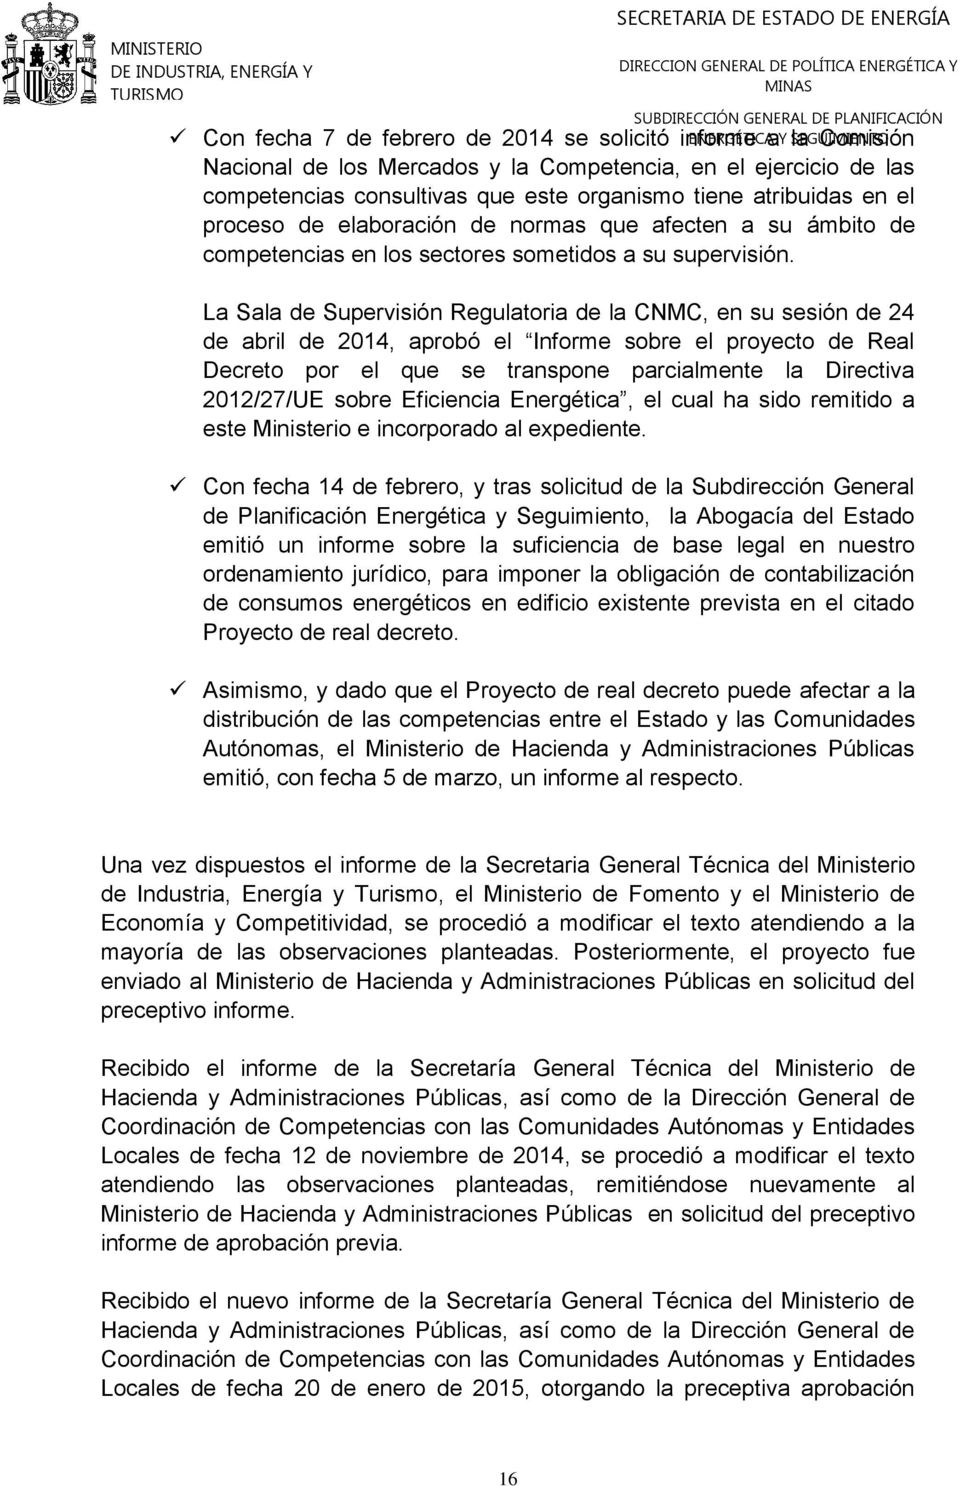 La Sala de Supervisión Regulatoria de la CNMC, en su sesión de 24 de abril de 2014, aprobó el Informe sobre el proyecto de Real Decreto por el que se transpone parcialmente la Directiva 2012/27/UE